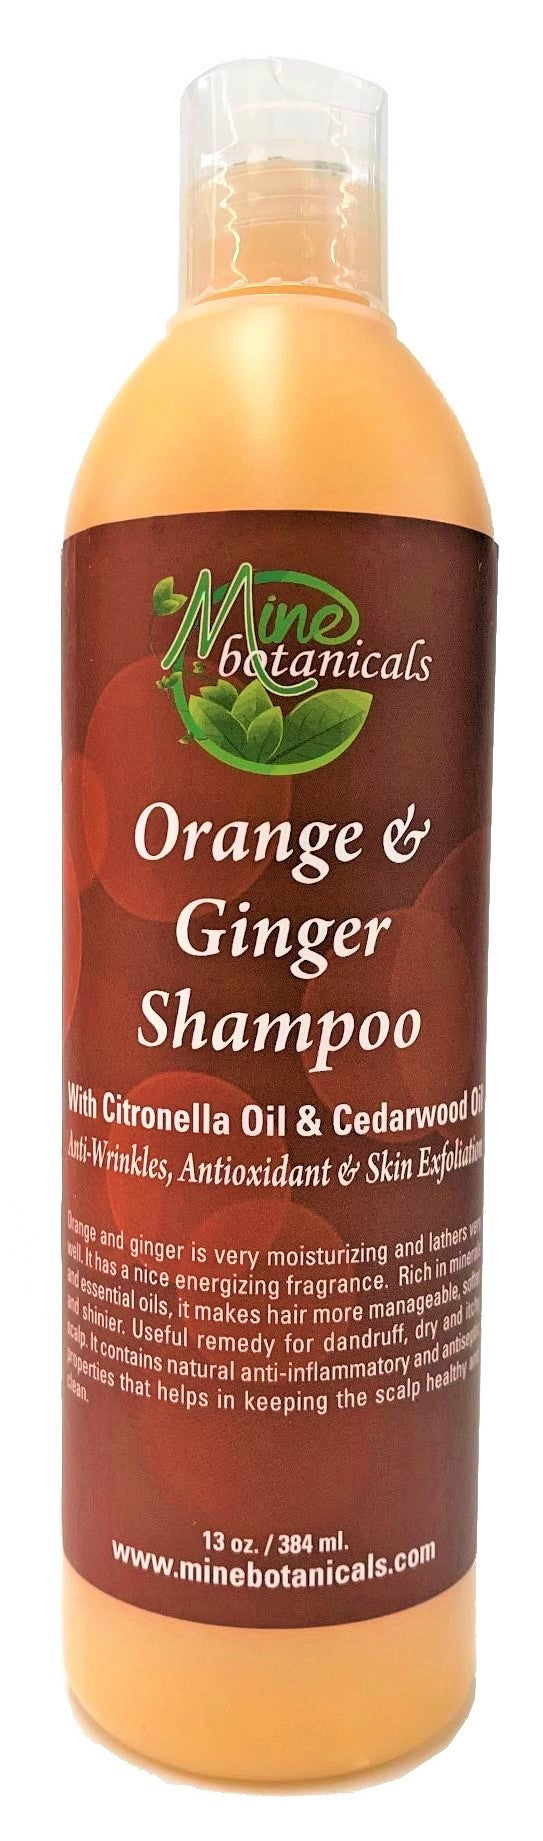 Orange & Ginger Shampoo